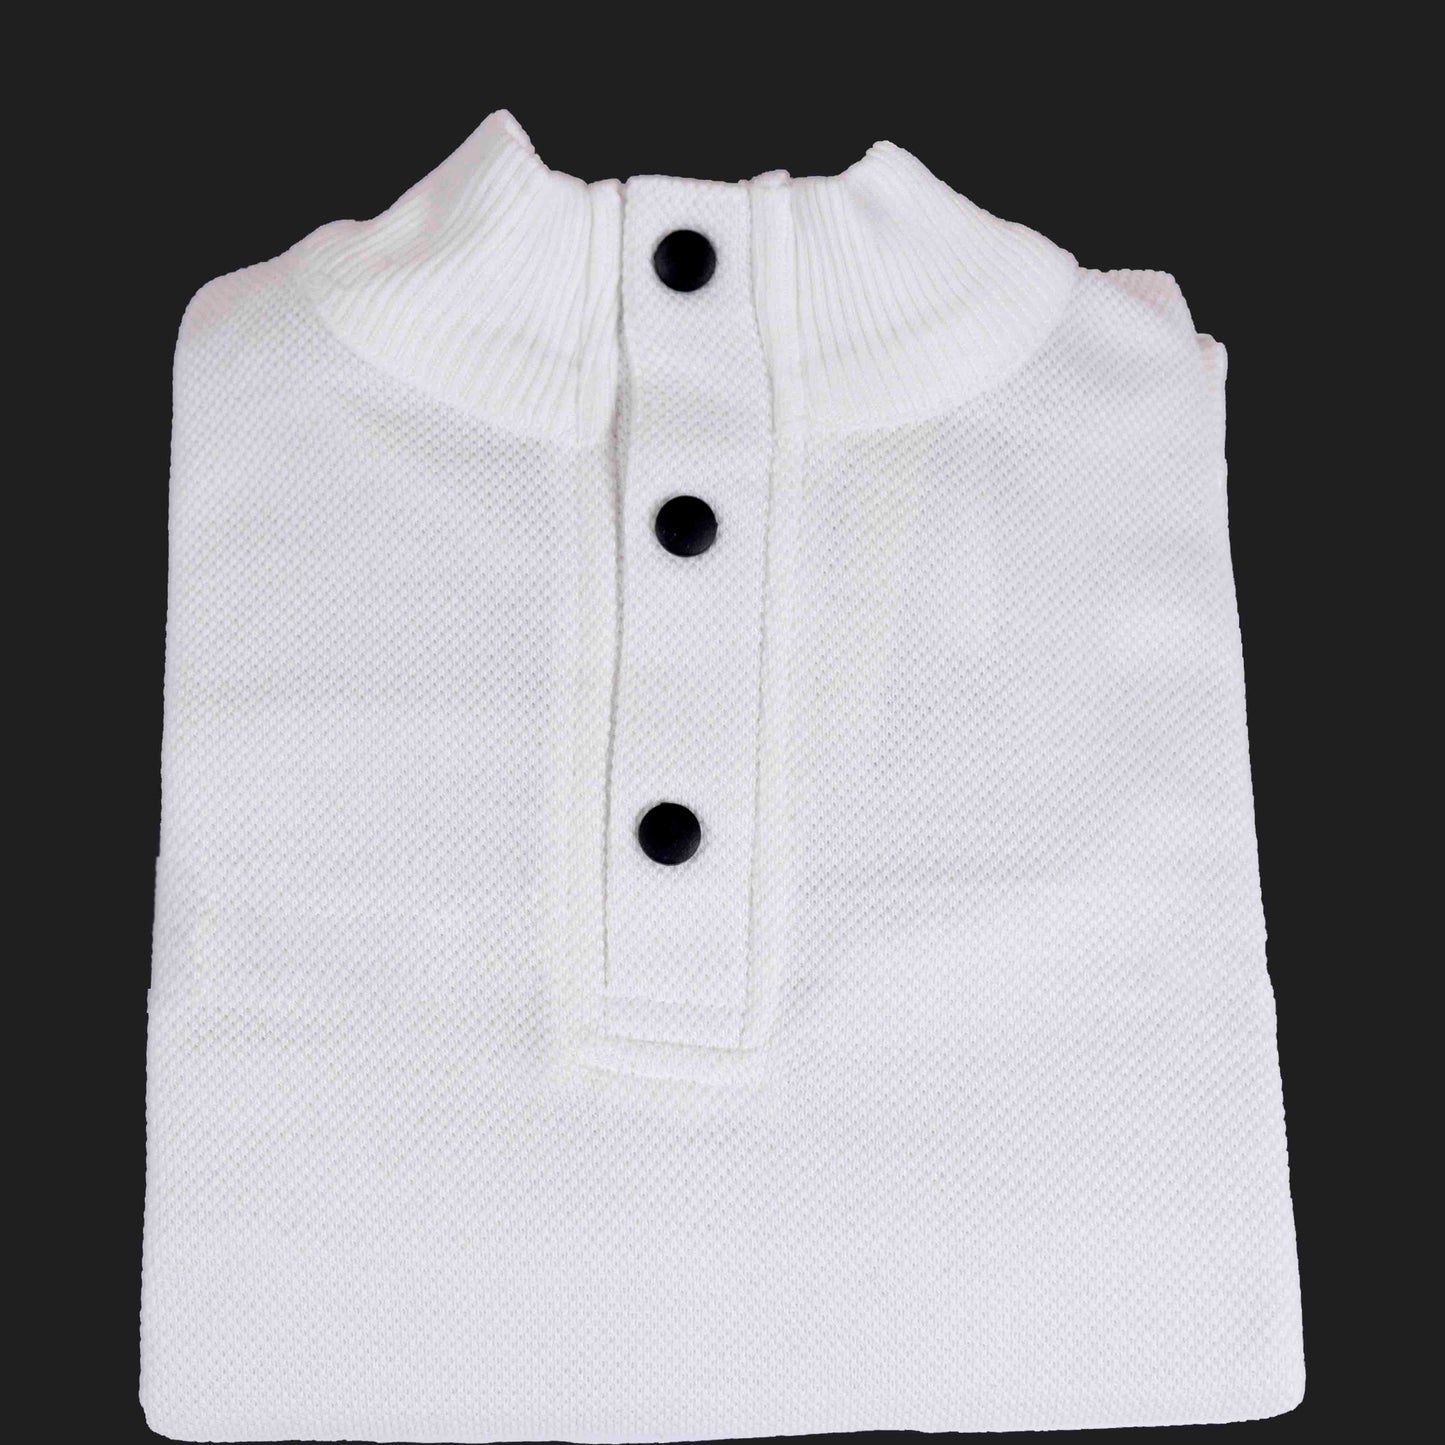 High/Turtle Neck Woolen Designer Sweater White